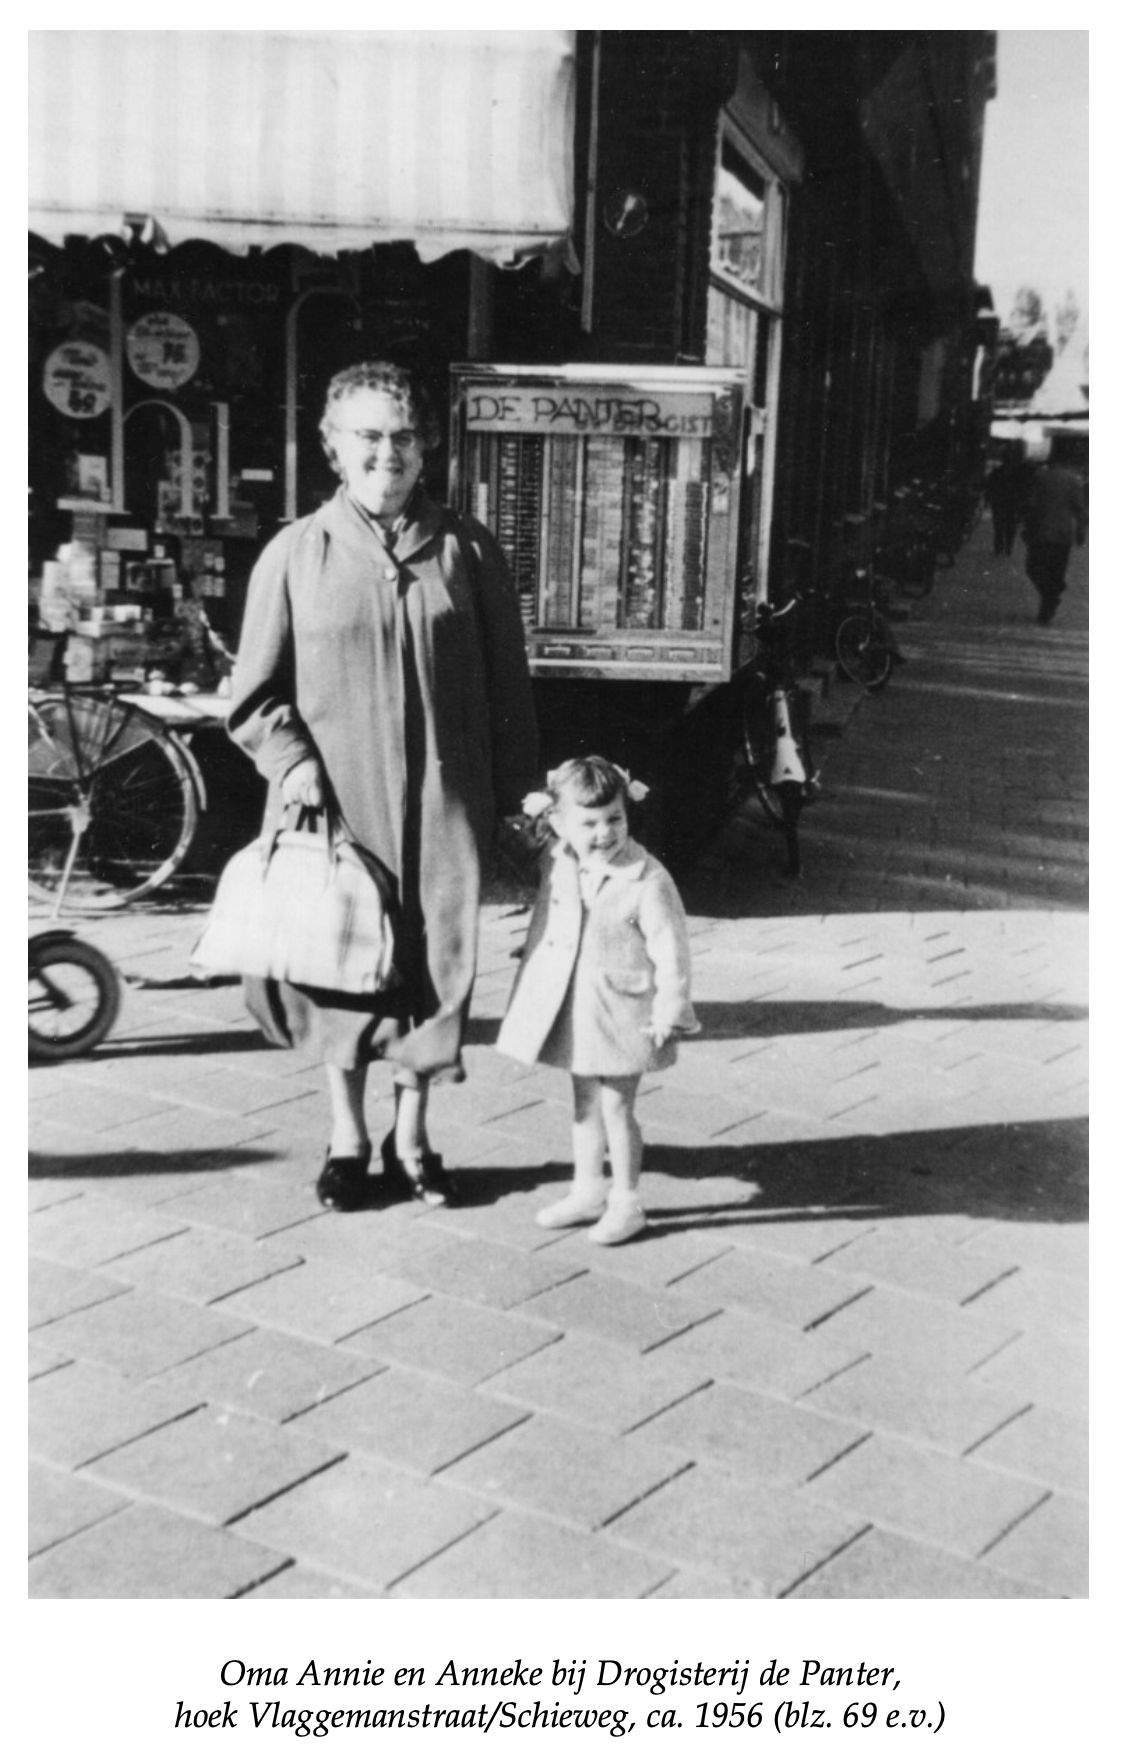 Oma Annie Otten Wessels Anneke Riper ca. 1956